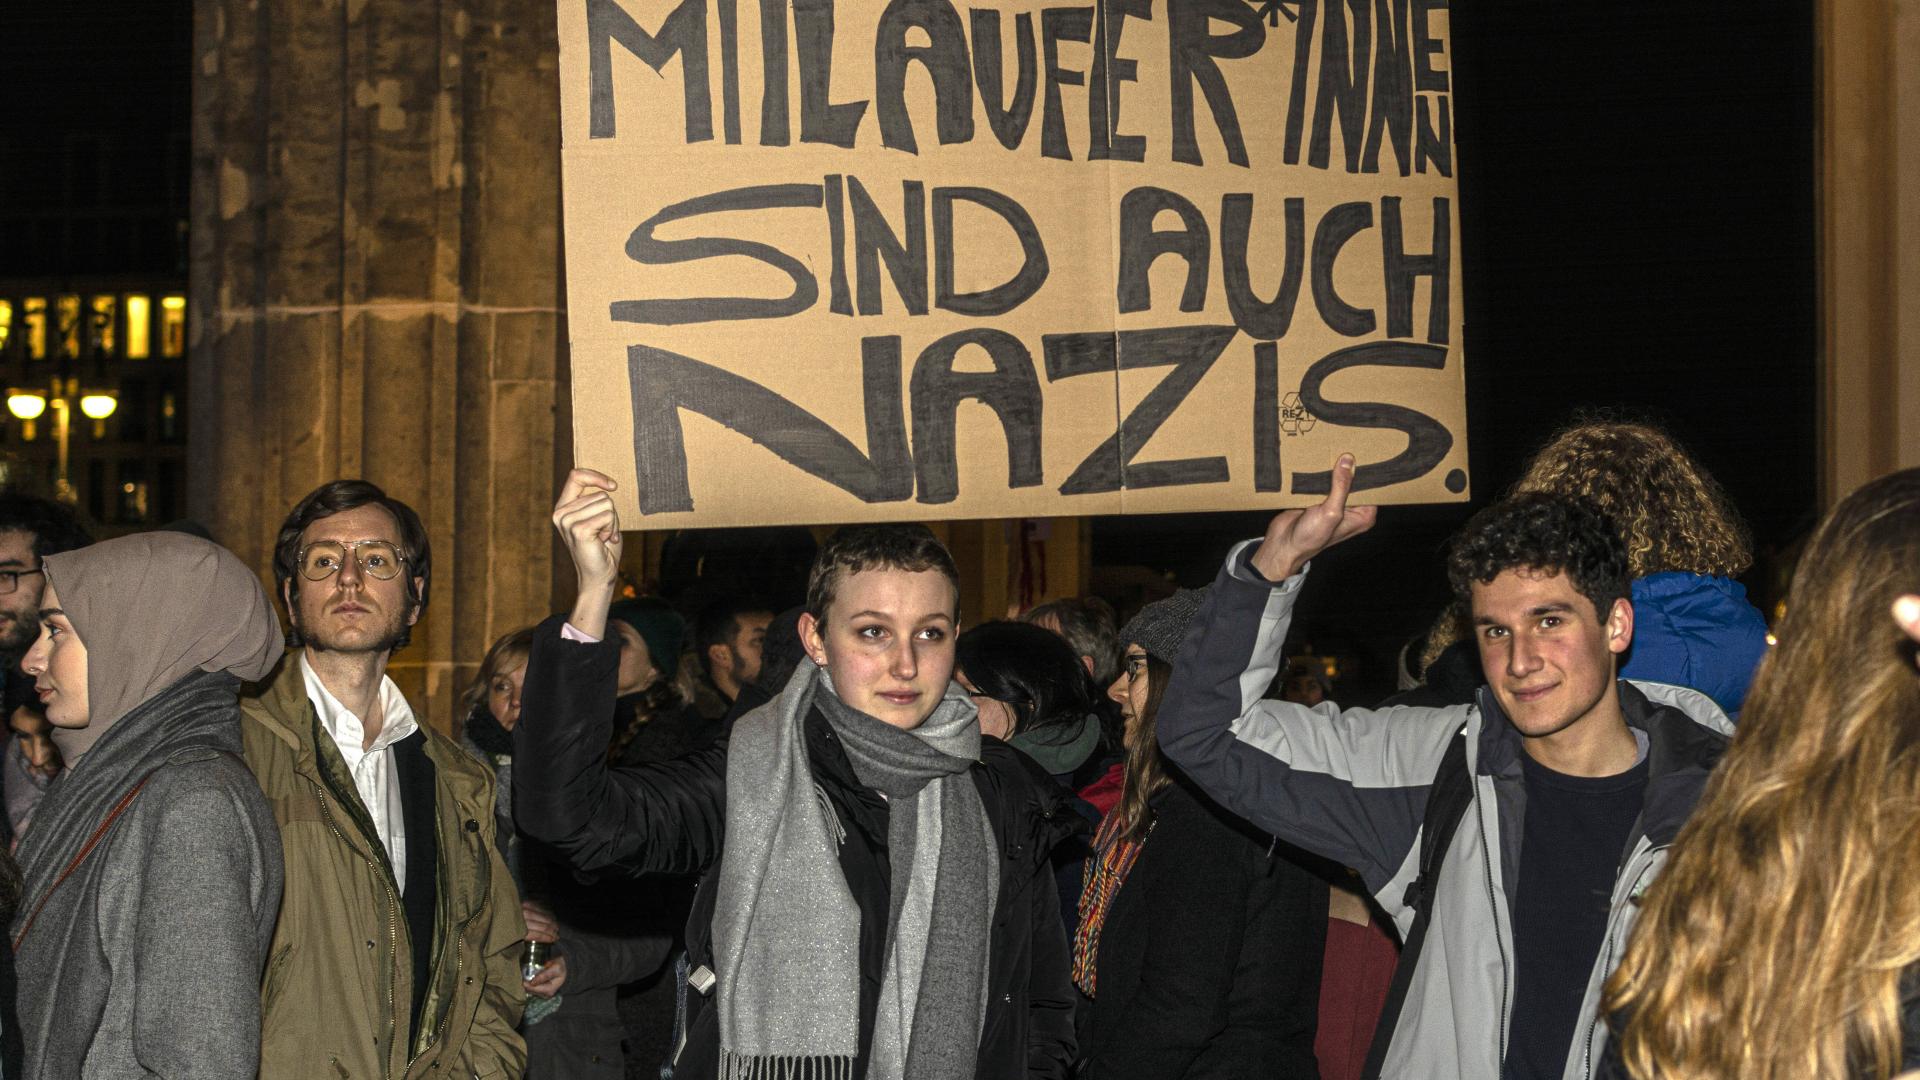 Mit einer spontanen Veranstaltung am Brandenburger-Tor in Berlin gedachten mehrere hundert Menschen den Opfern in Hanau.